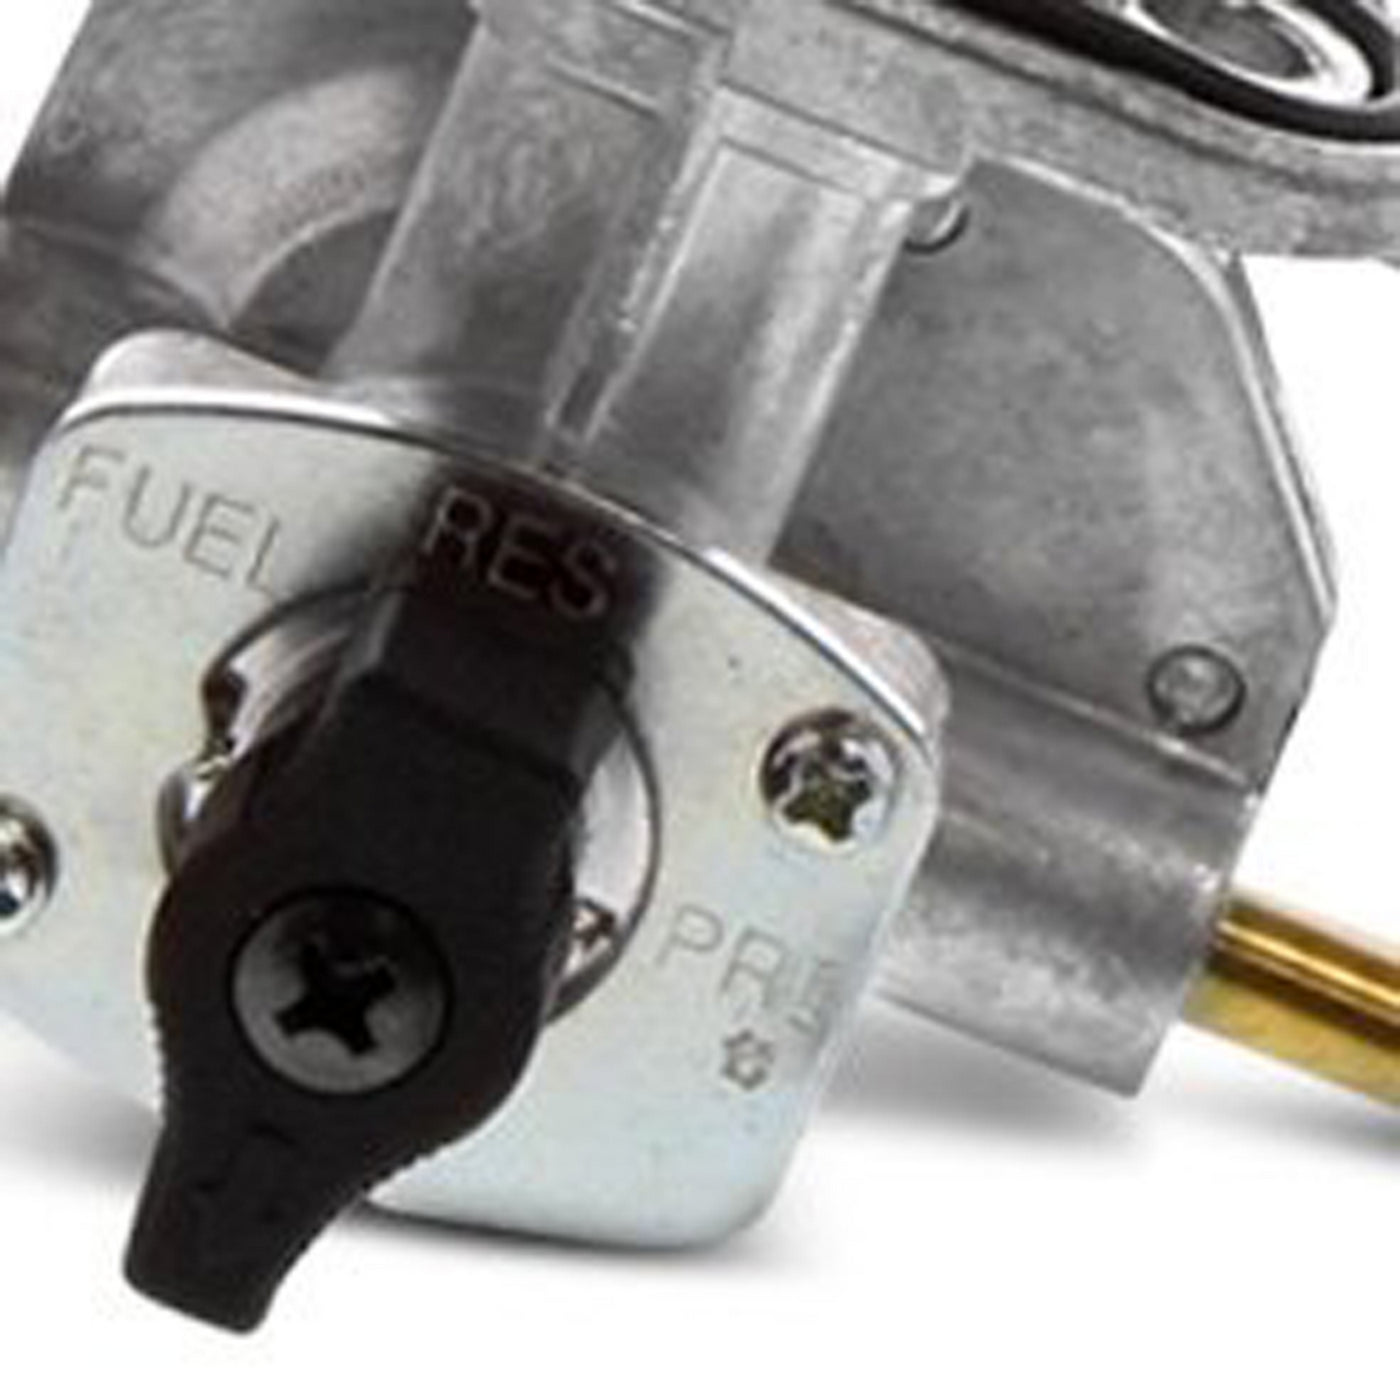 Fuel Star FS101-0118 Fuel Valve Kit #FS101-0118